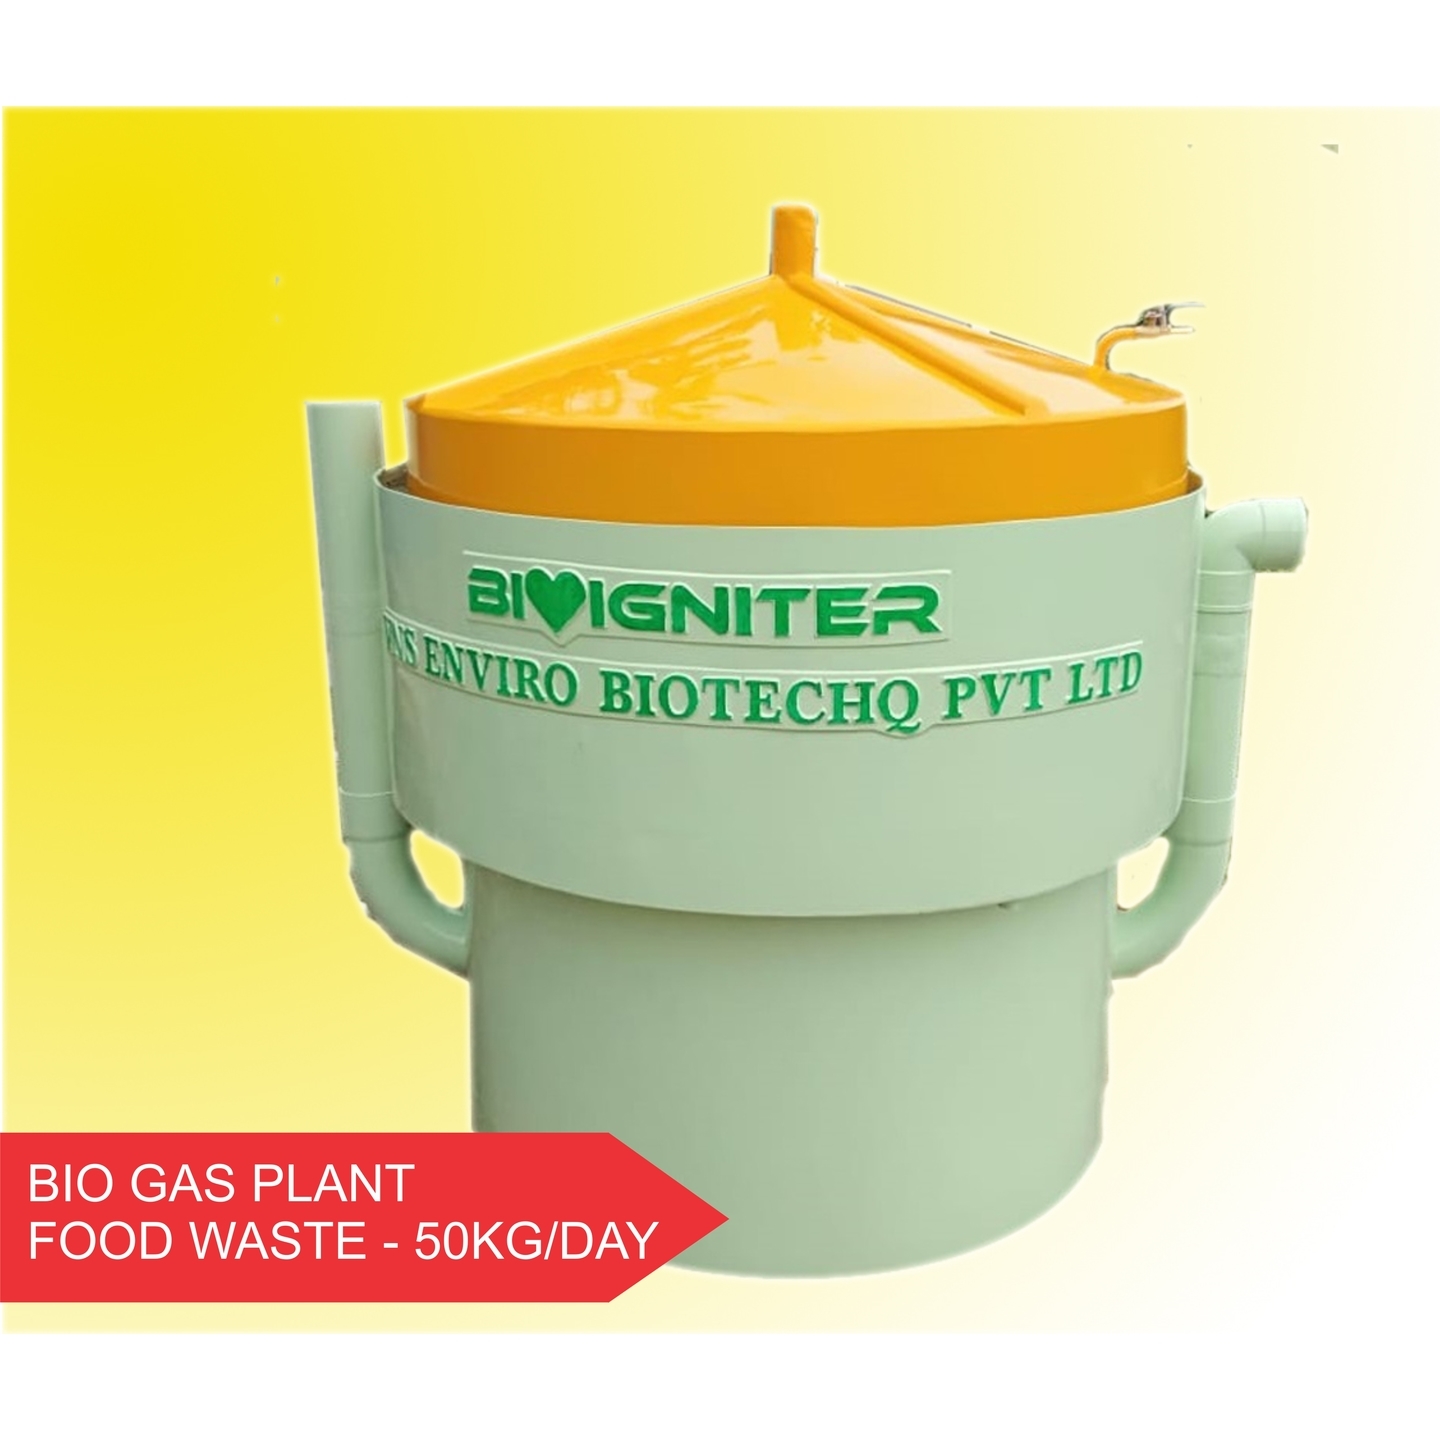 Bioigniter - 50KGDay Food Waste